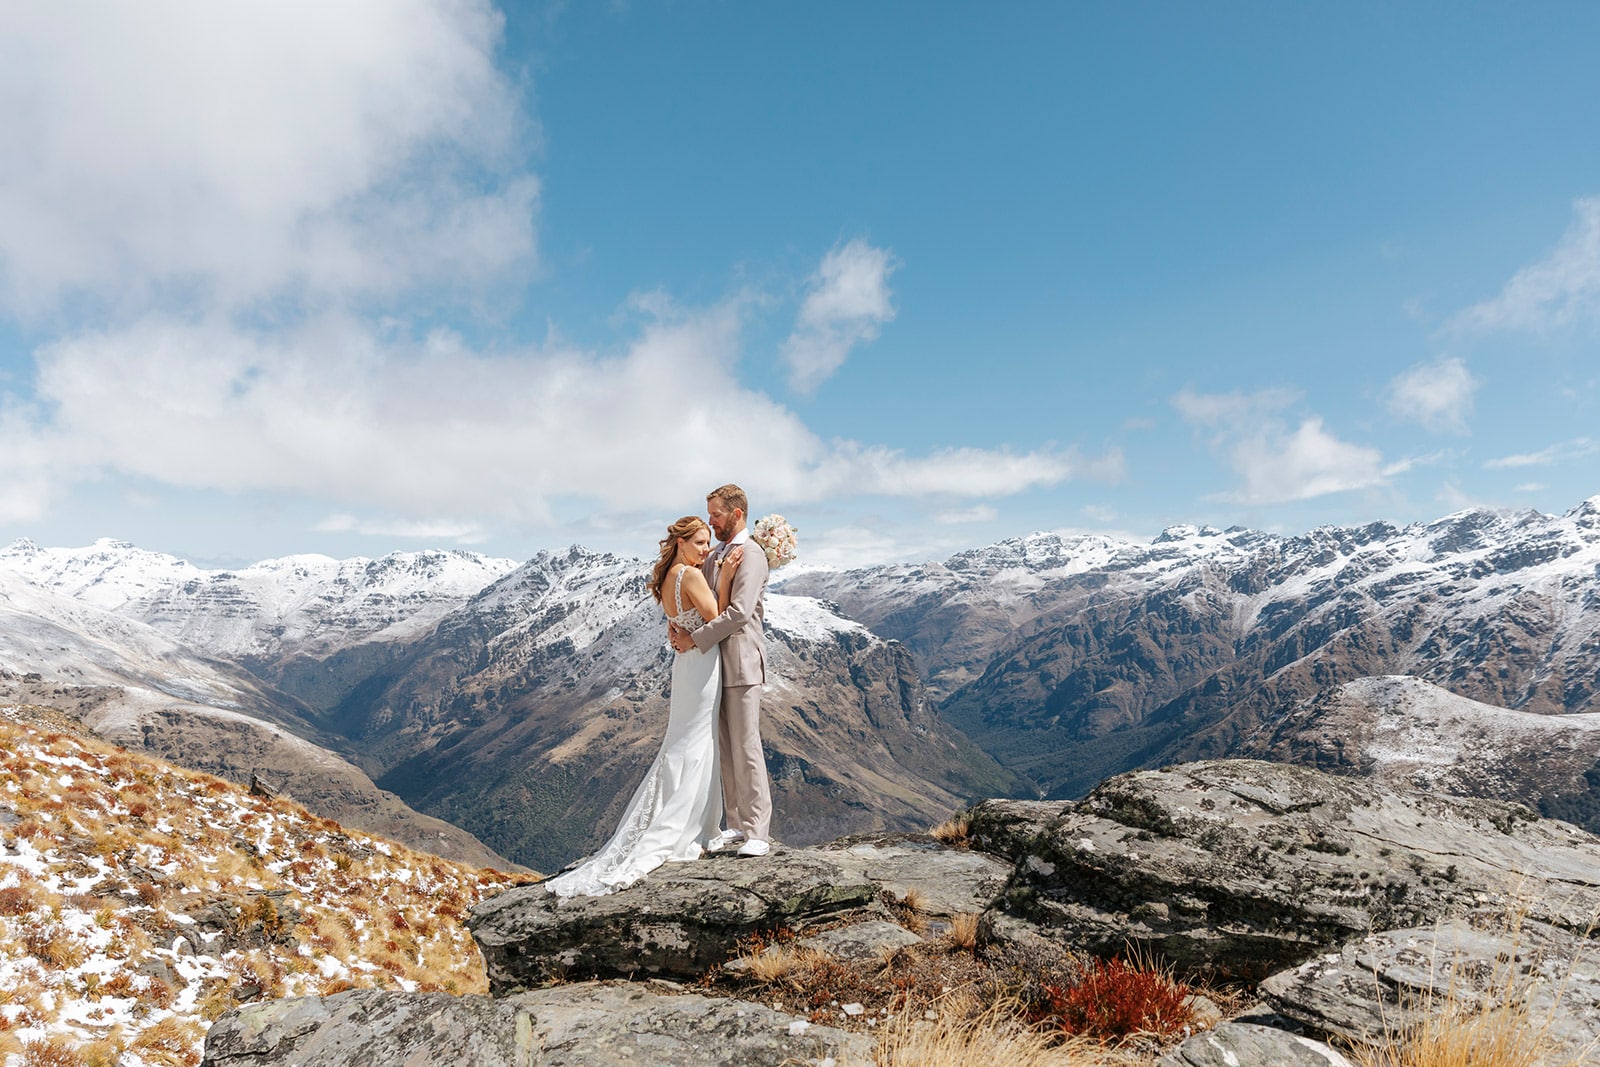 Spring Heli Wedding in Queenstown New Zealand